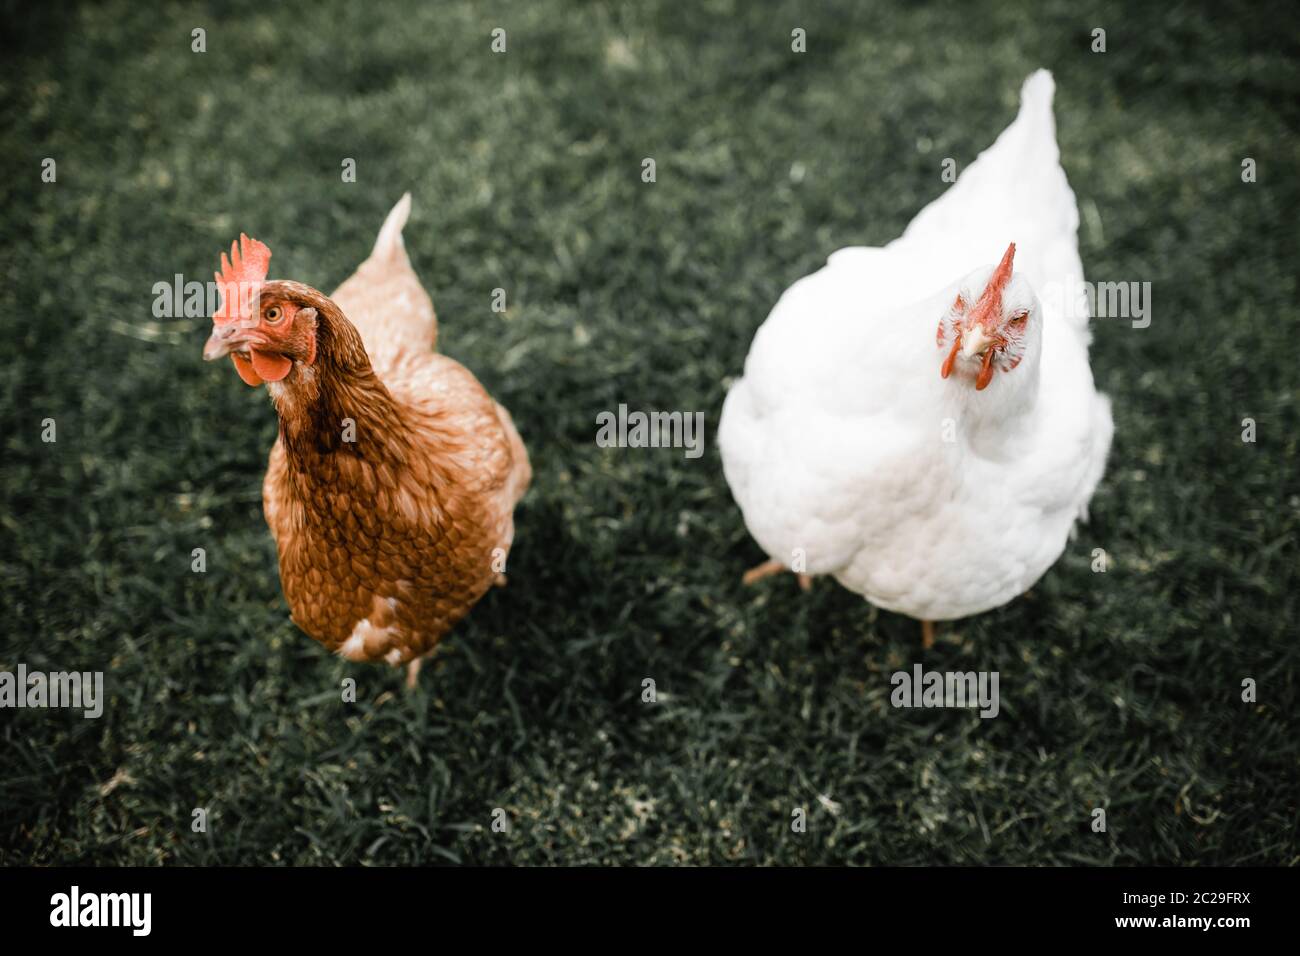 poule brune isa située à côté du poulet blanc sur l'herbe Banque D'Images